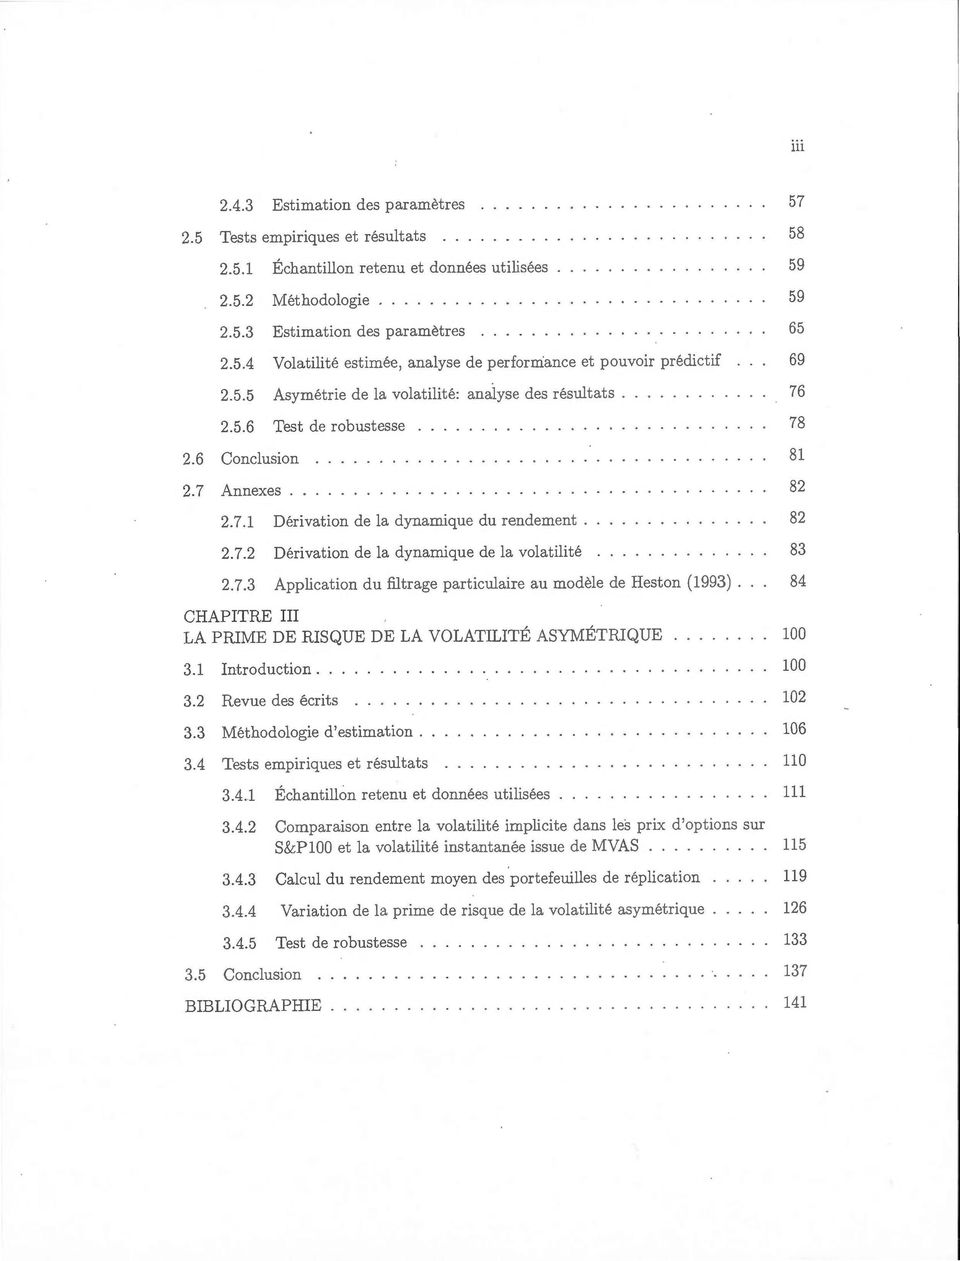 7.3 Application du filtrage particulaire au modèle de Heston (1993). 84 CHAPITRE III LA PRIME DE RISQUE DE LA VOLATILITÉ ASYMÉTRIQUE 3.1 Introduction... 3.2 Revue des écrits 3.